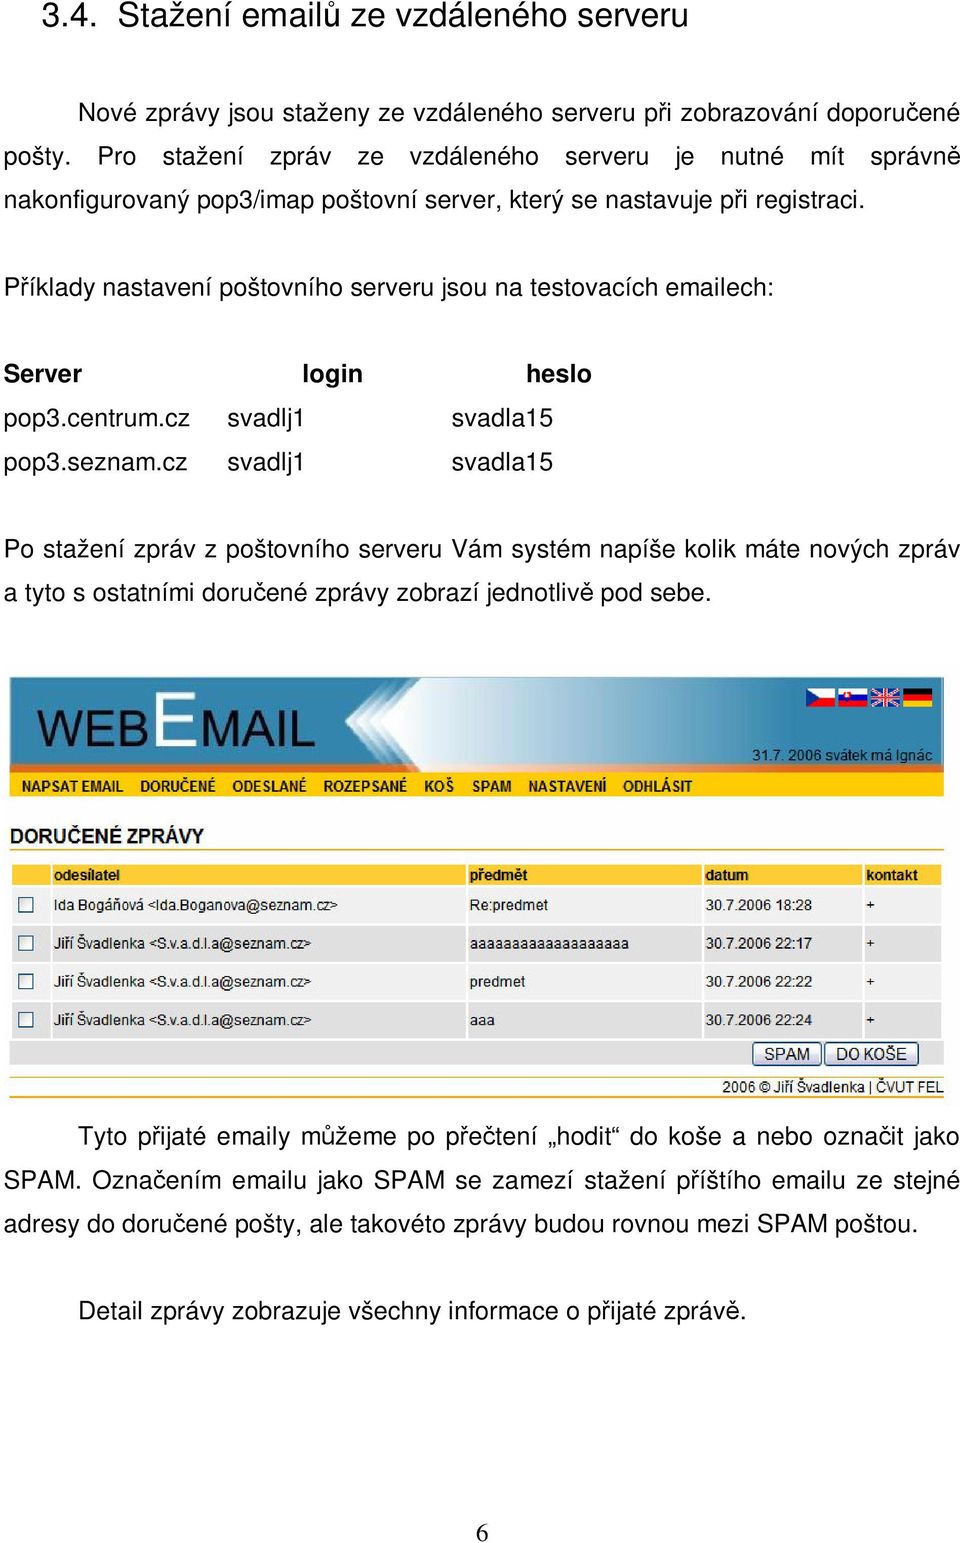 Píklady nastavení poštovního serveru jsou na testovacích emailech: Server login heslo pop3.centrum.cz svadlj1 svadla15 pop3.seznam.